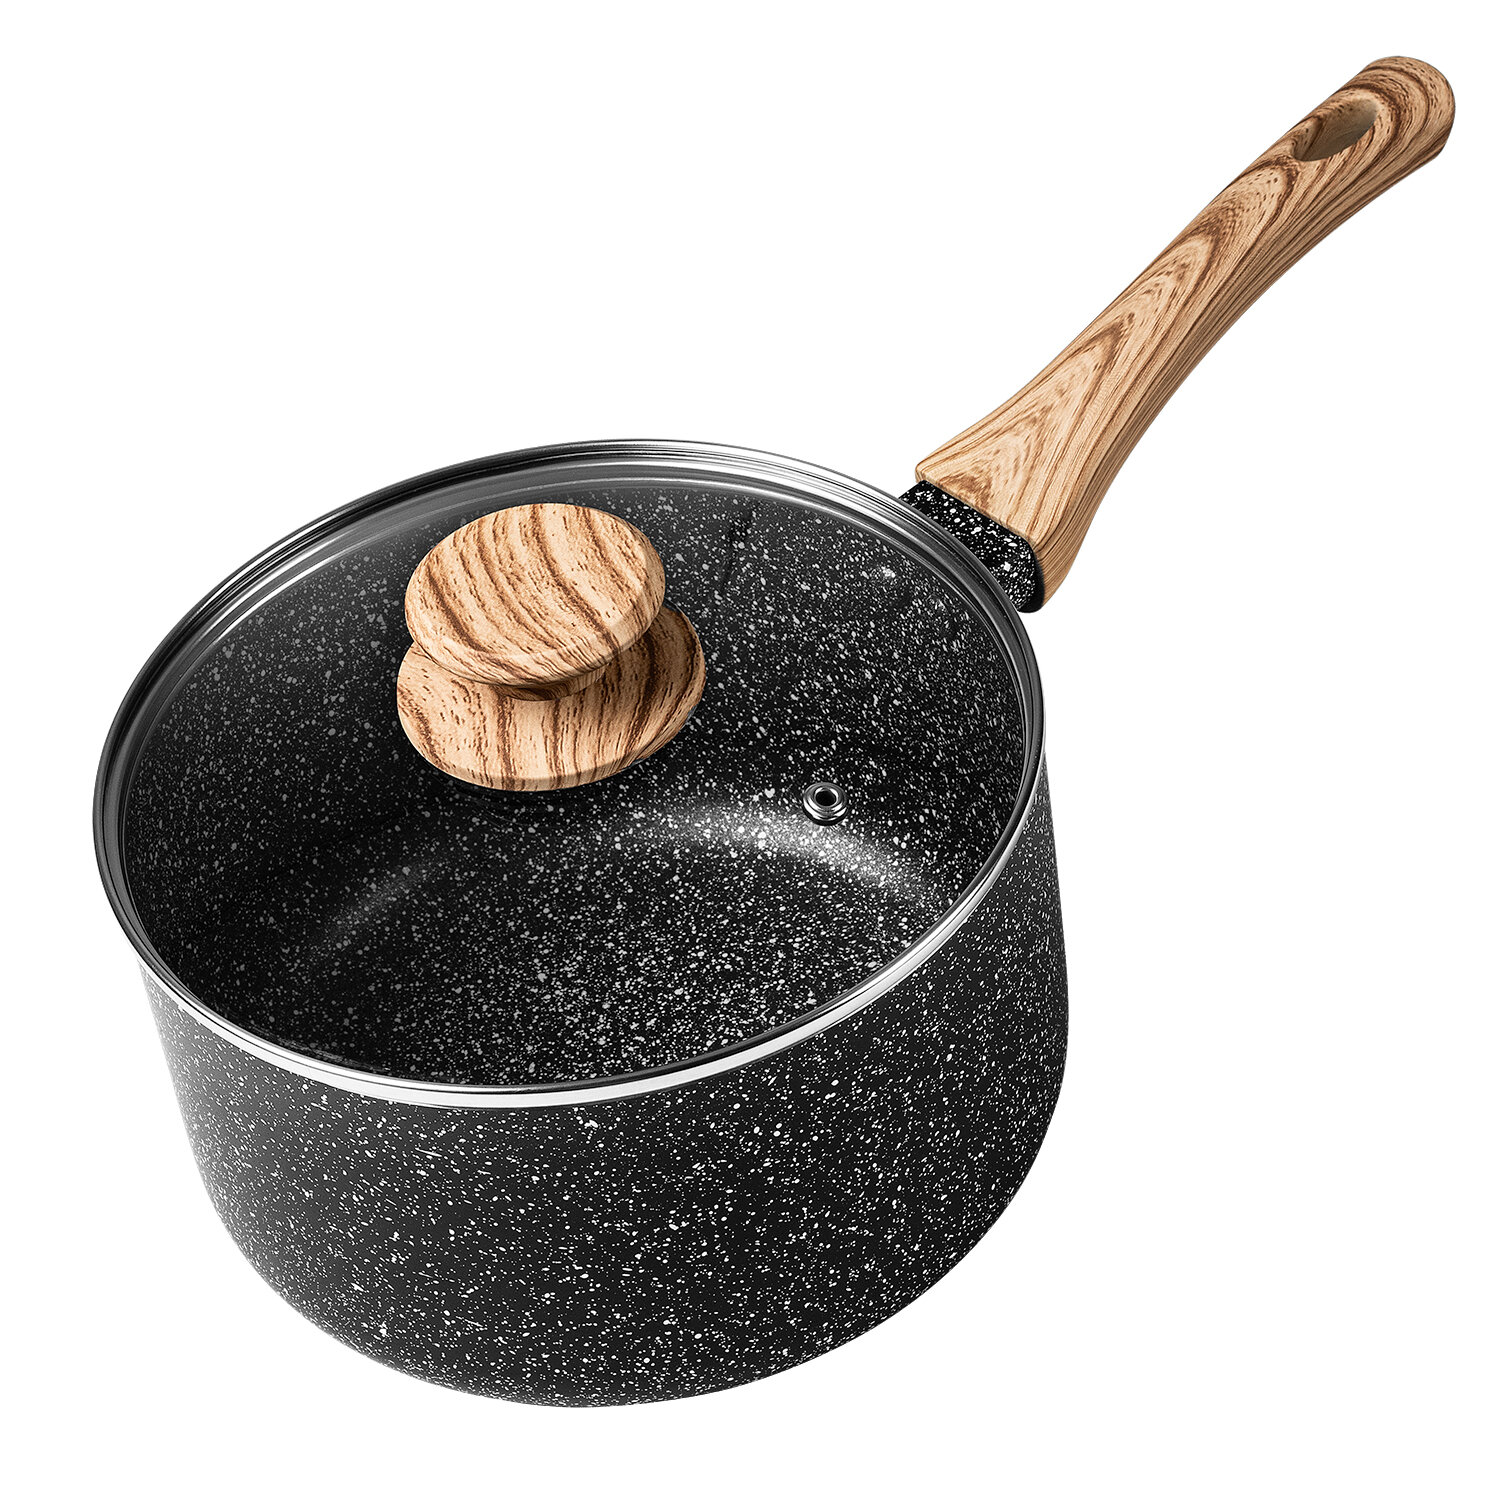 MICHELANGELO Copper Sauce pans with lids 1.5+3qt, Copper Saucepan